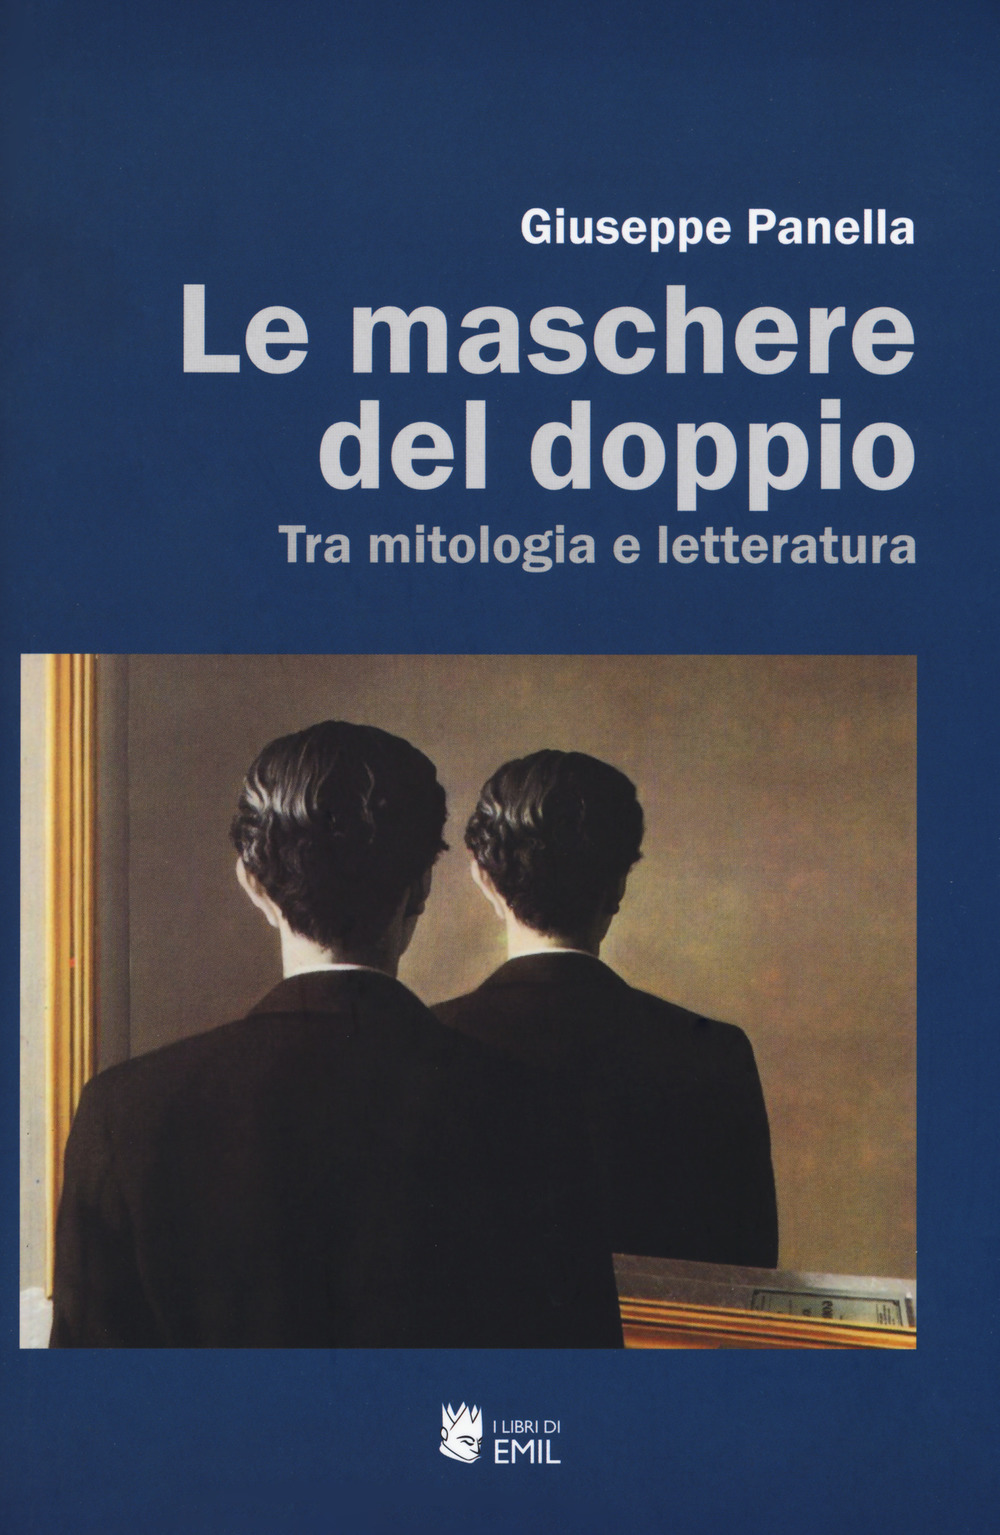 La copertina del libro di Giuseppe Panella 'Le maschere del doppio'